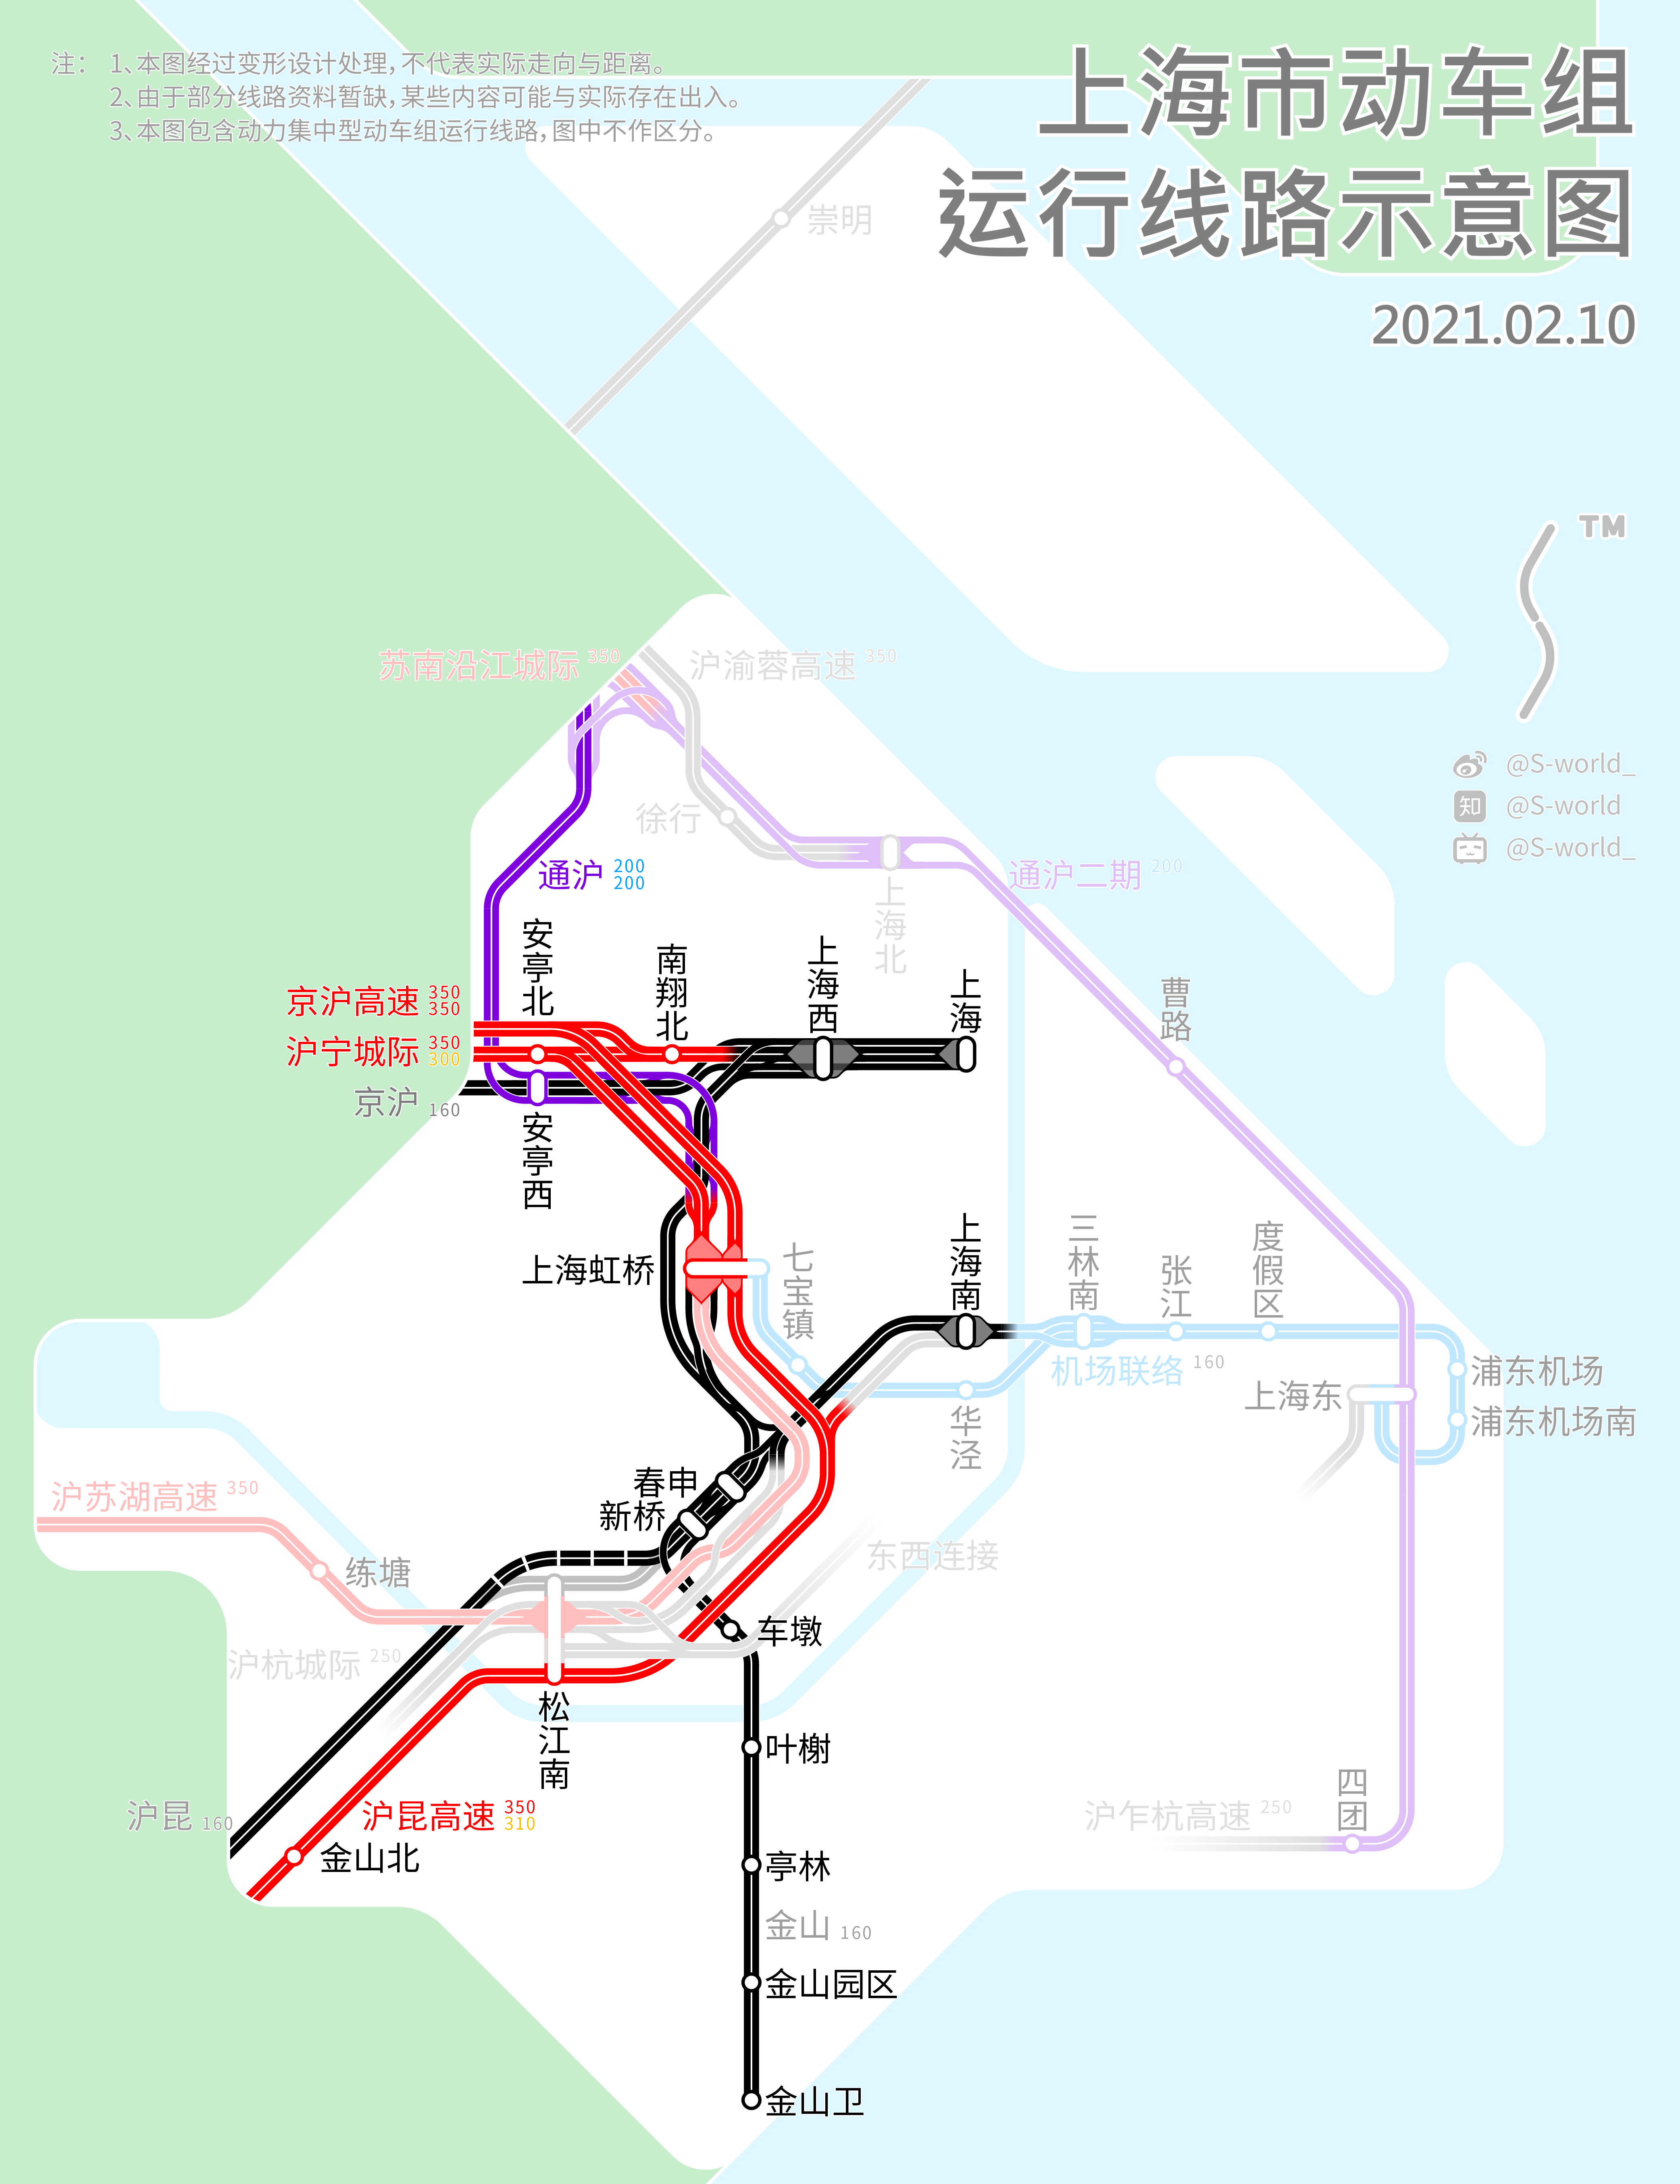 上海市动车组运行线路示意图